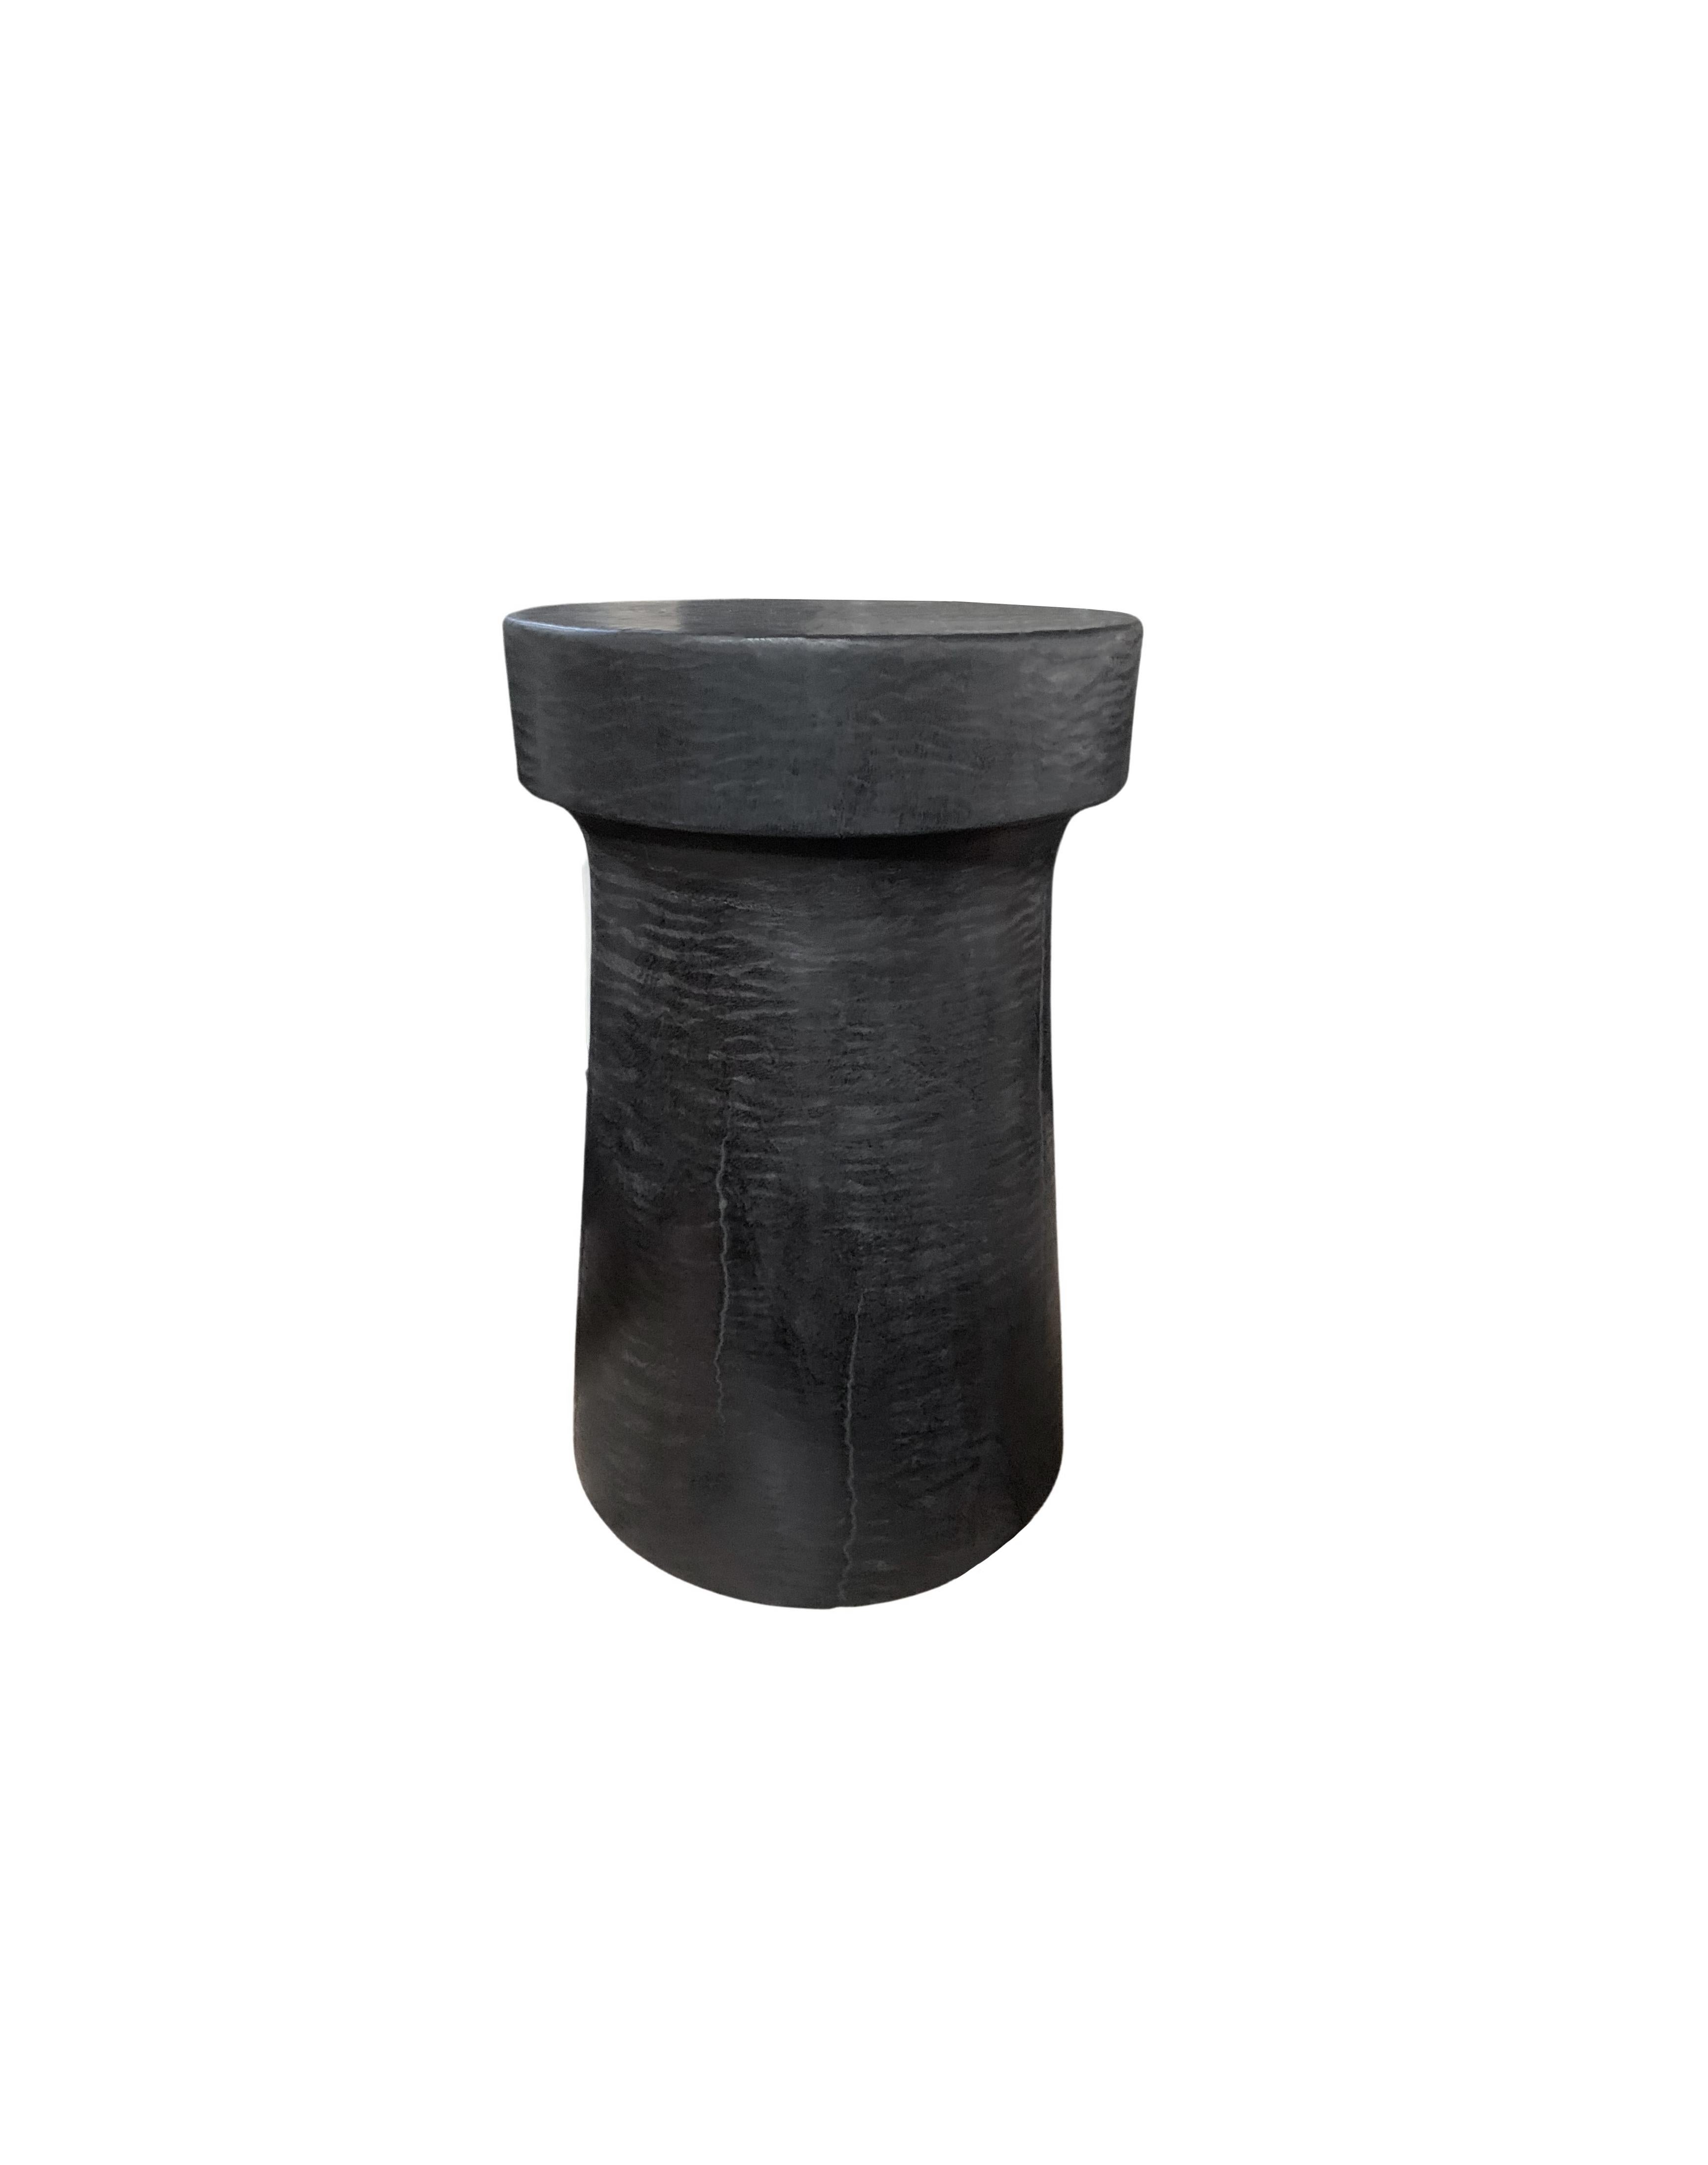 Une table d'appoint ronde merveilleusement sculpturale. Son pigment noir a été obtenu par un processus de brûlage créant une couleur et un effet merveilleux. Son pigment neutre et sa subtile texture de bois en font un produit parfait pour tout